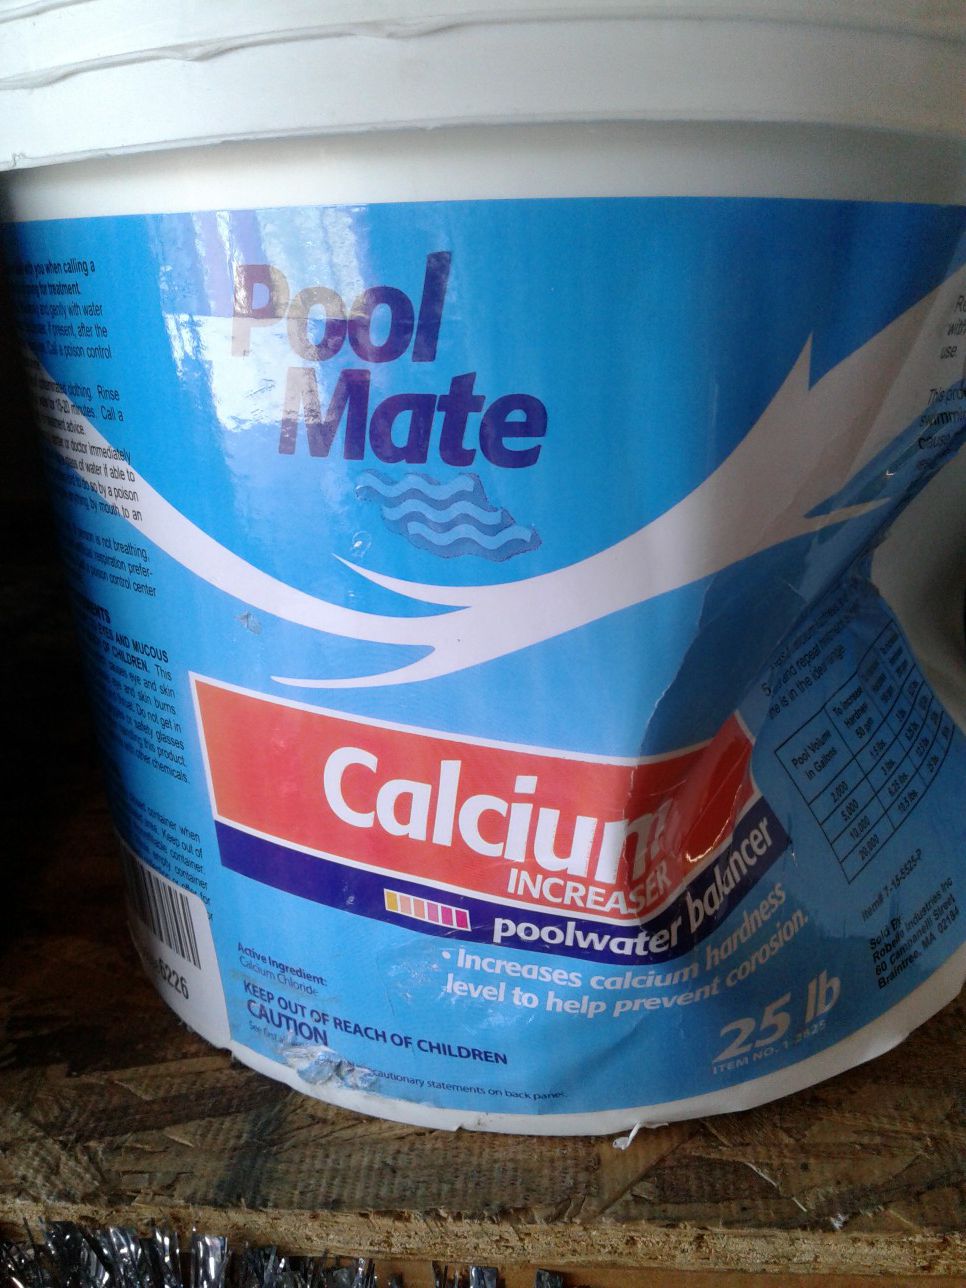 Pool mate Calcium Increaser